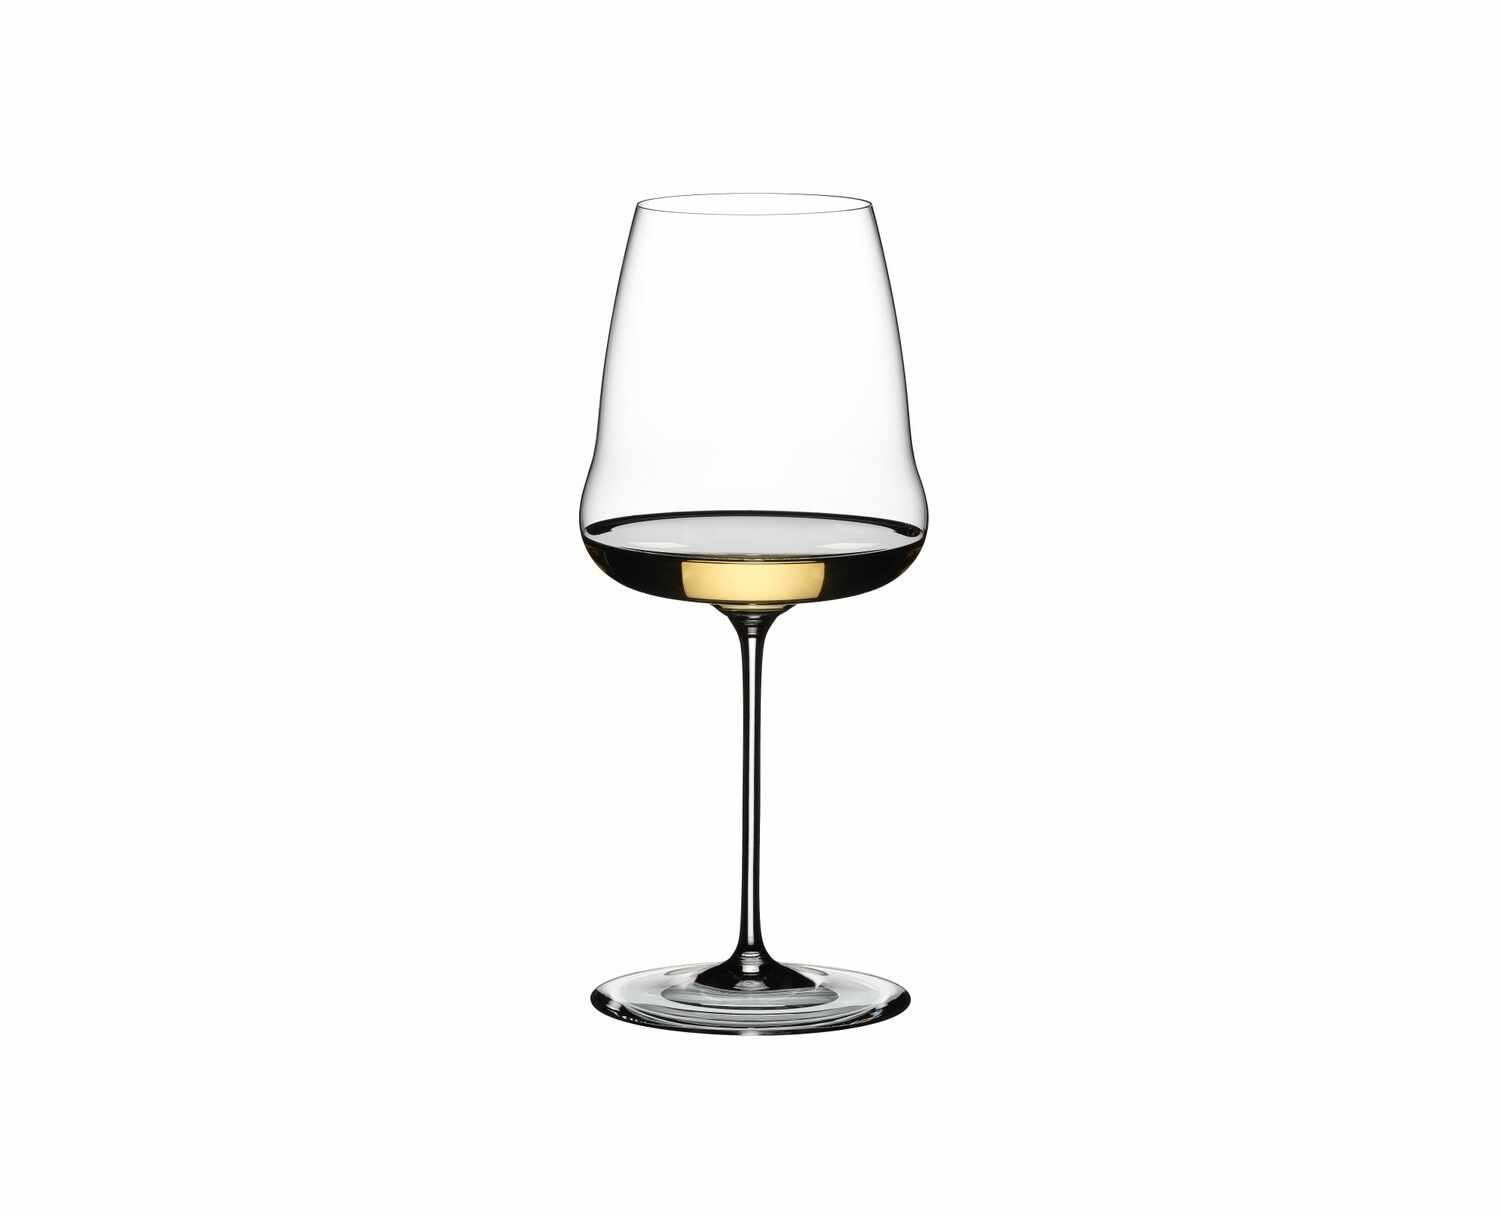  Pahar pentru vin, din cristal Winewings Chardonnay, 736 ml, Riedel la pret 212 lei 